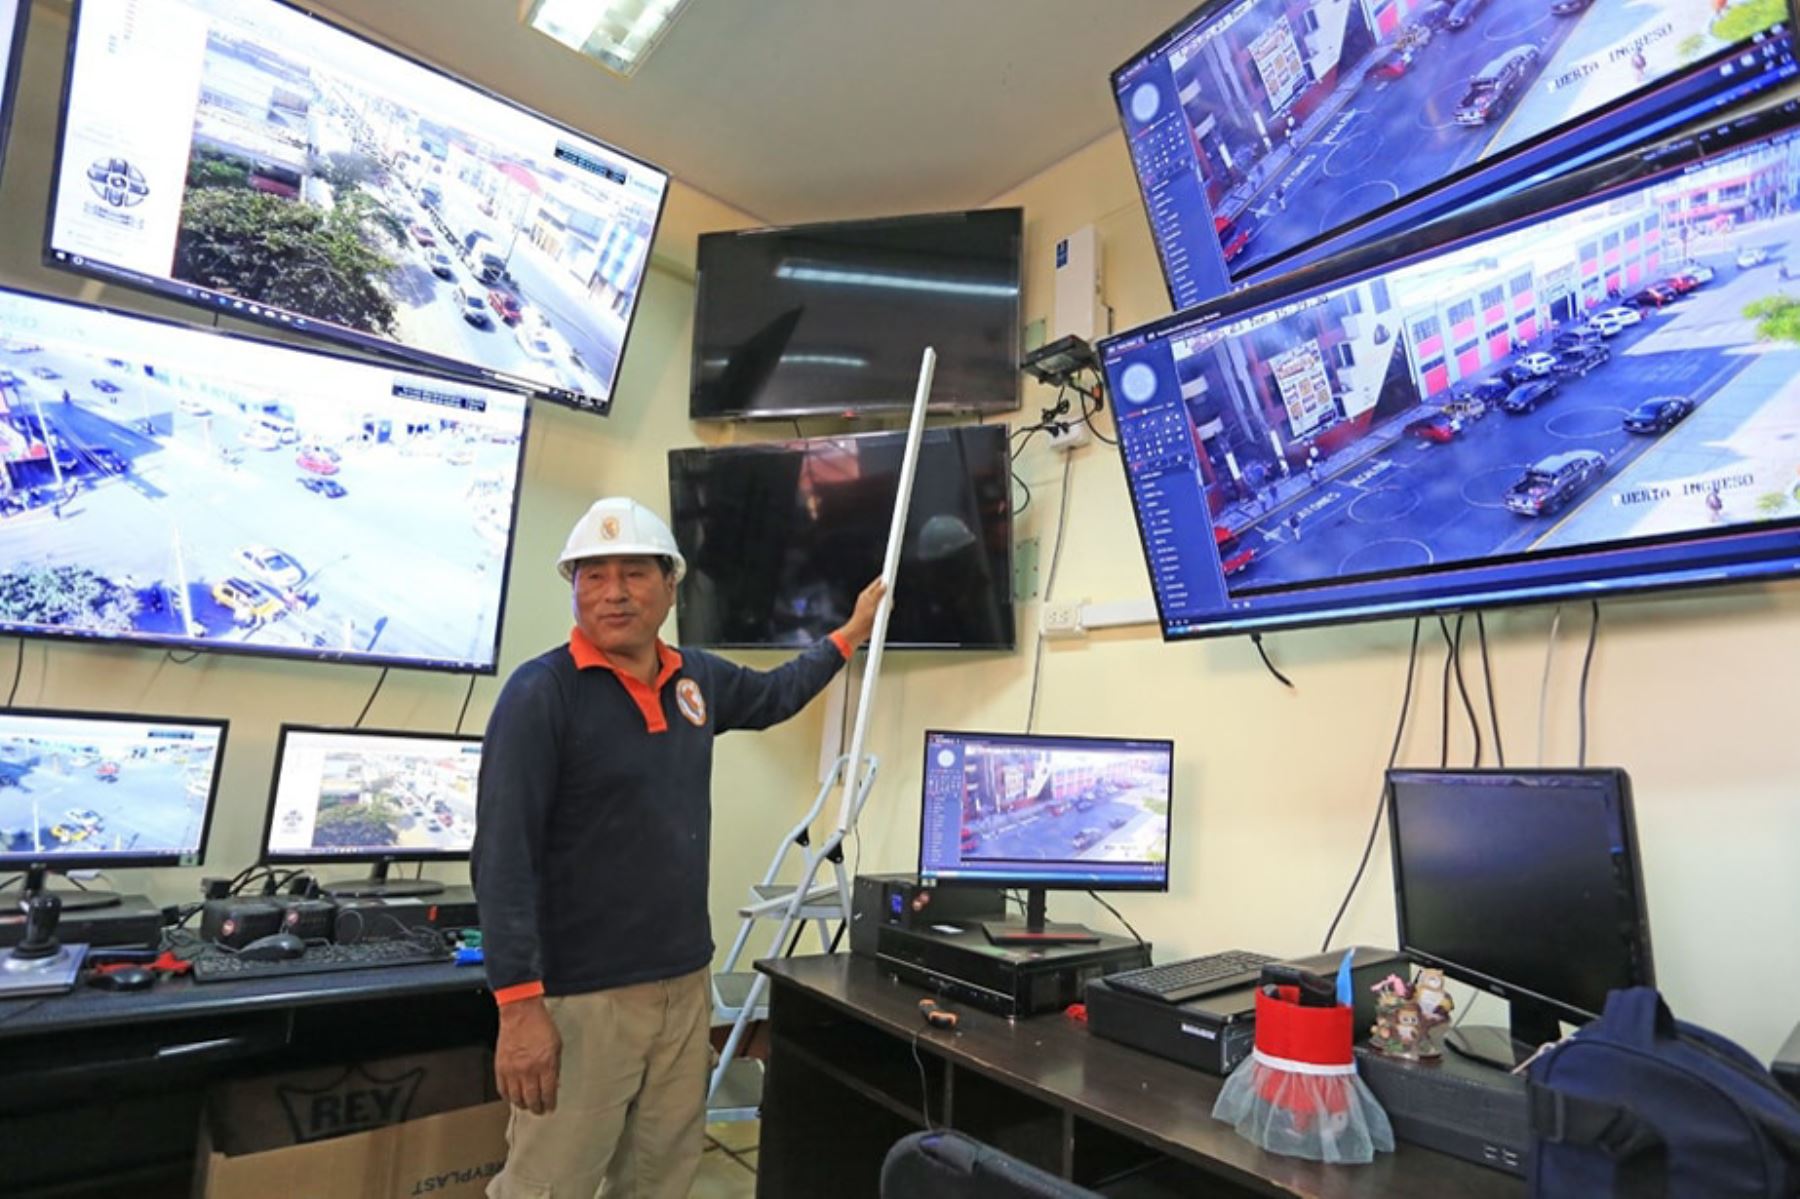 Los equipos de alerta temprana funcionarán con televisión digital terrestre. Foto: ANDINA/Difusión